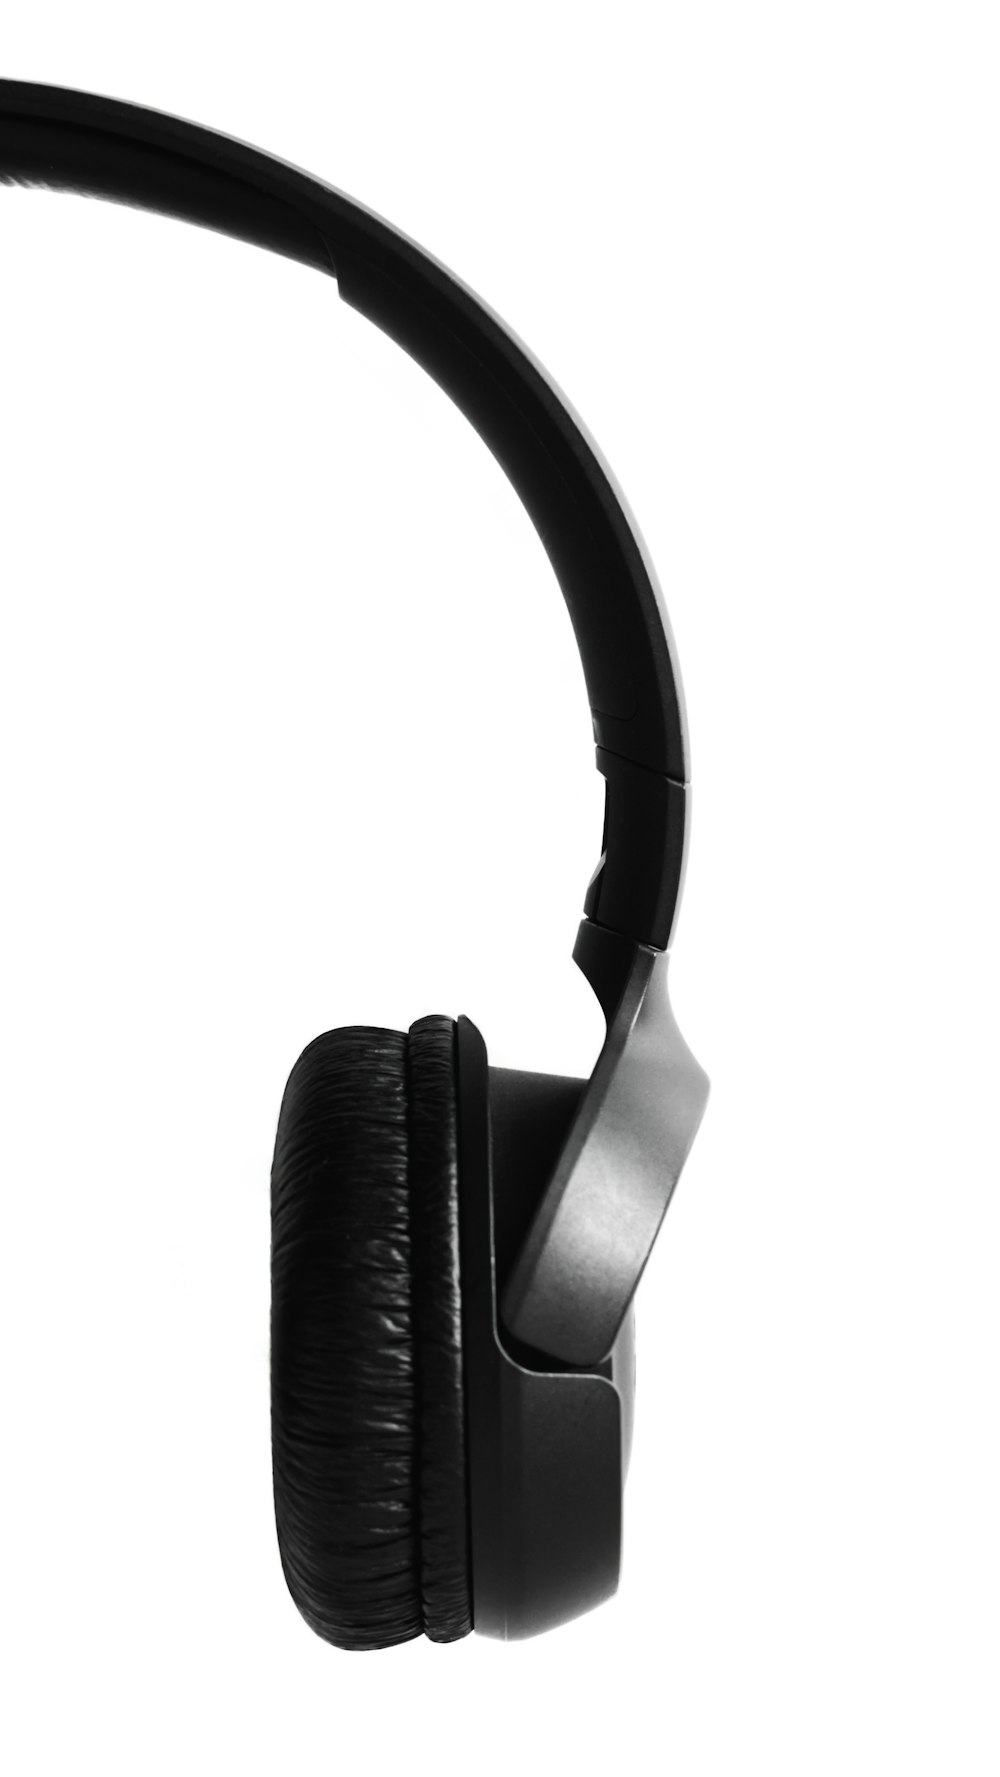 grey Ultimate Ears bluetooth speaker photo – Free Speaker Image on Unsplash